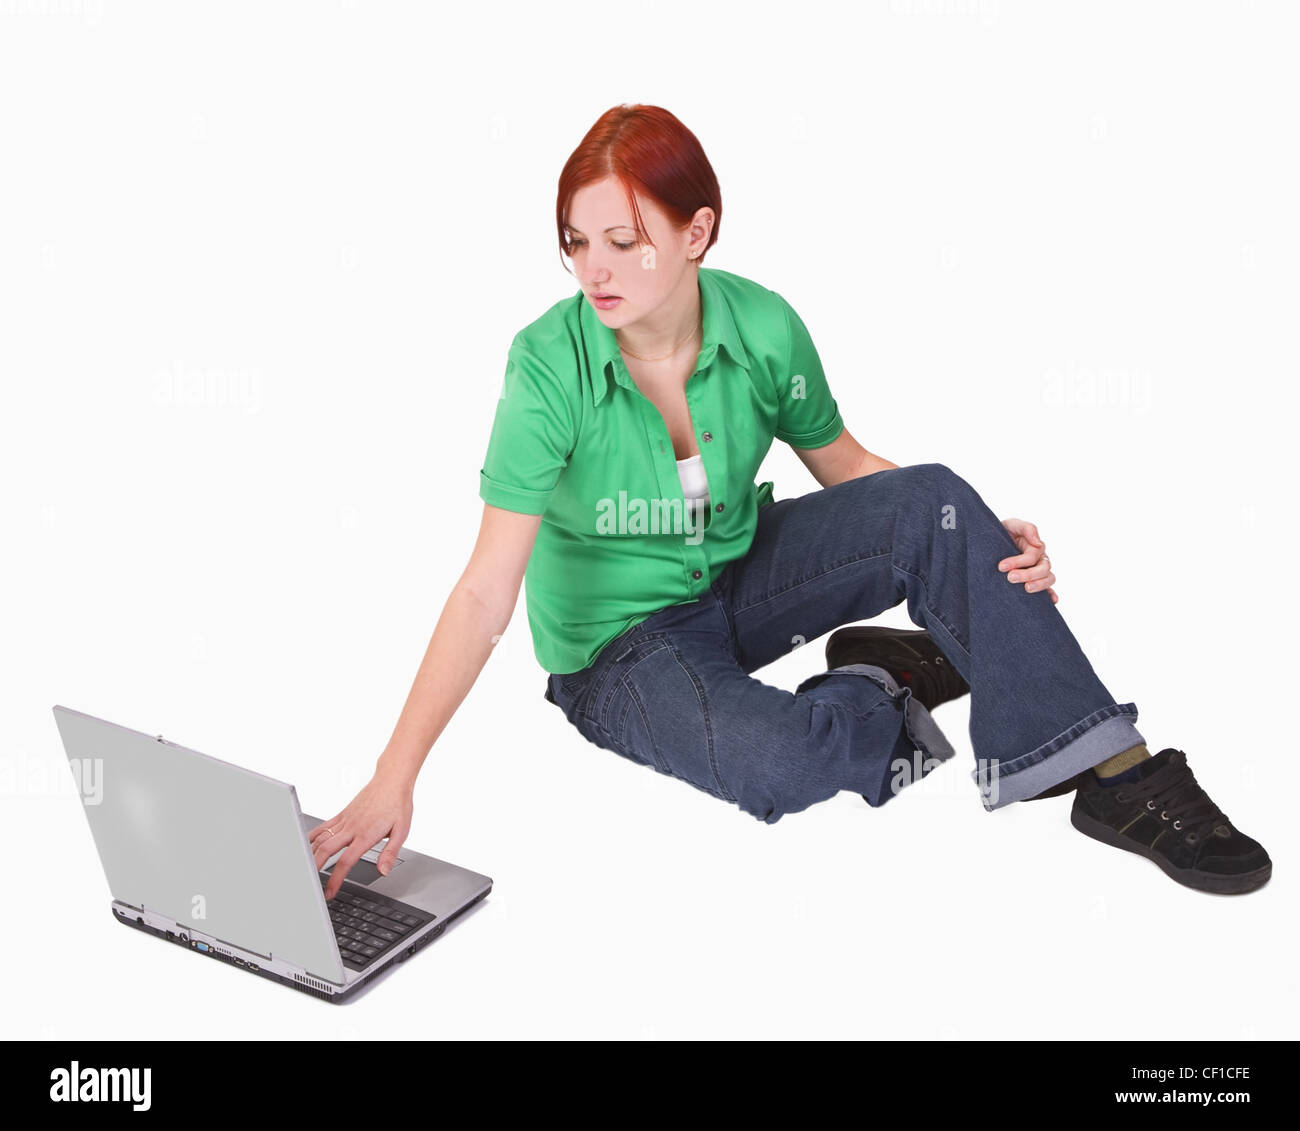 Rothaarige Teenager-Mädchen auf einem Laptop arbeiten. Stockfoto